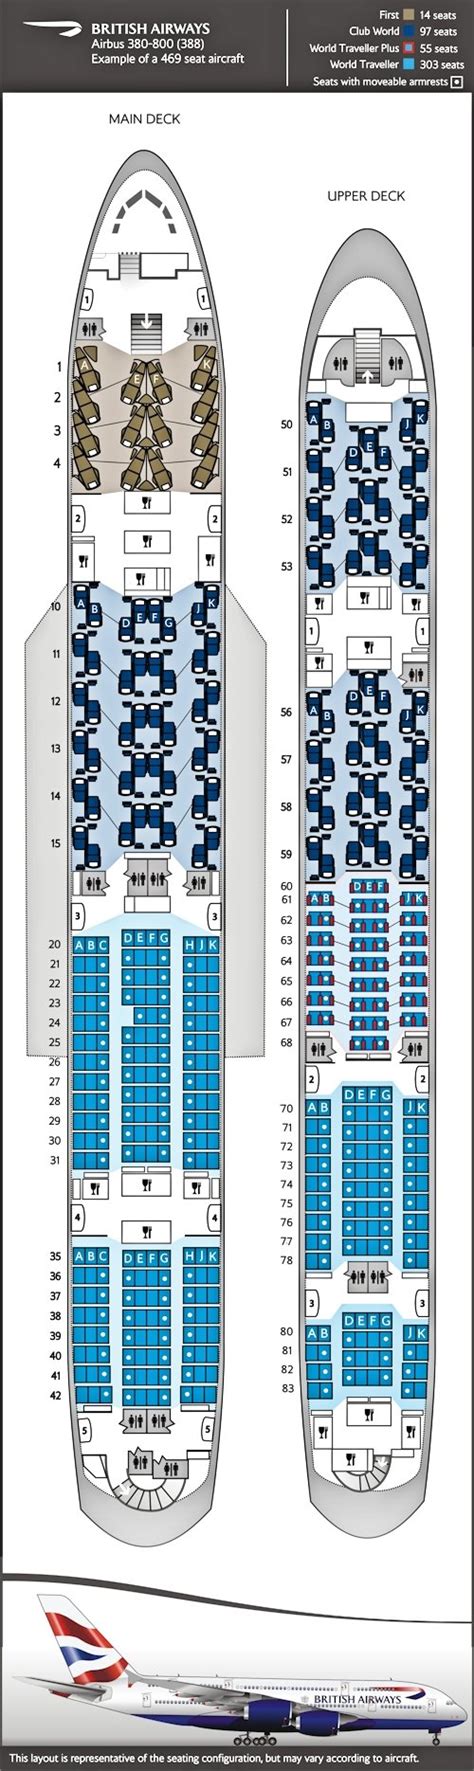 British Airways A380 Seating Plan